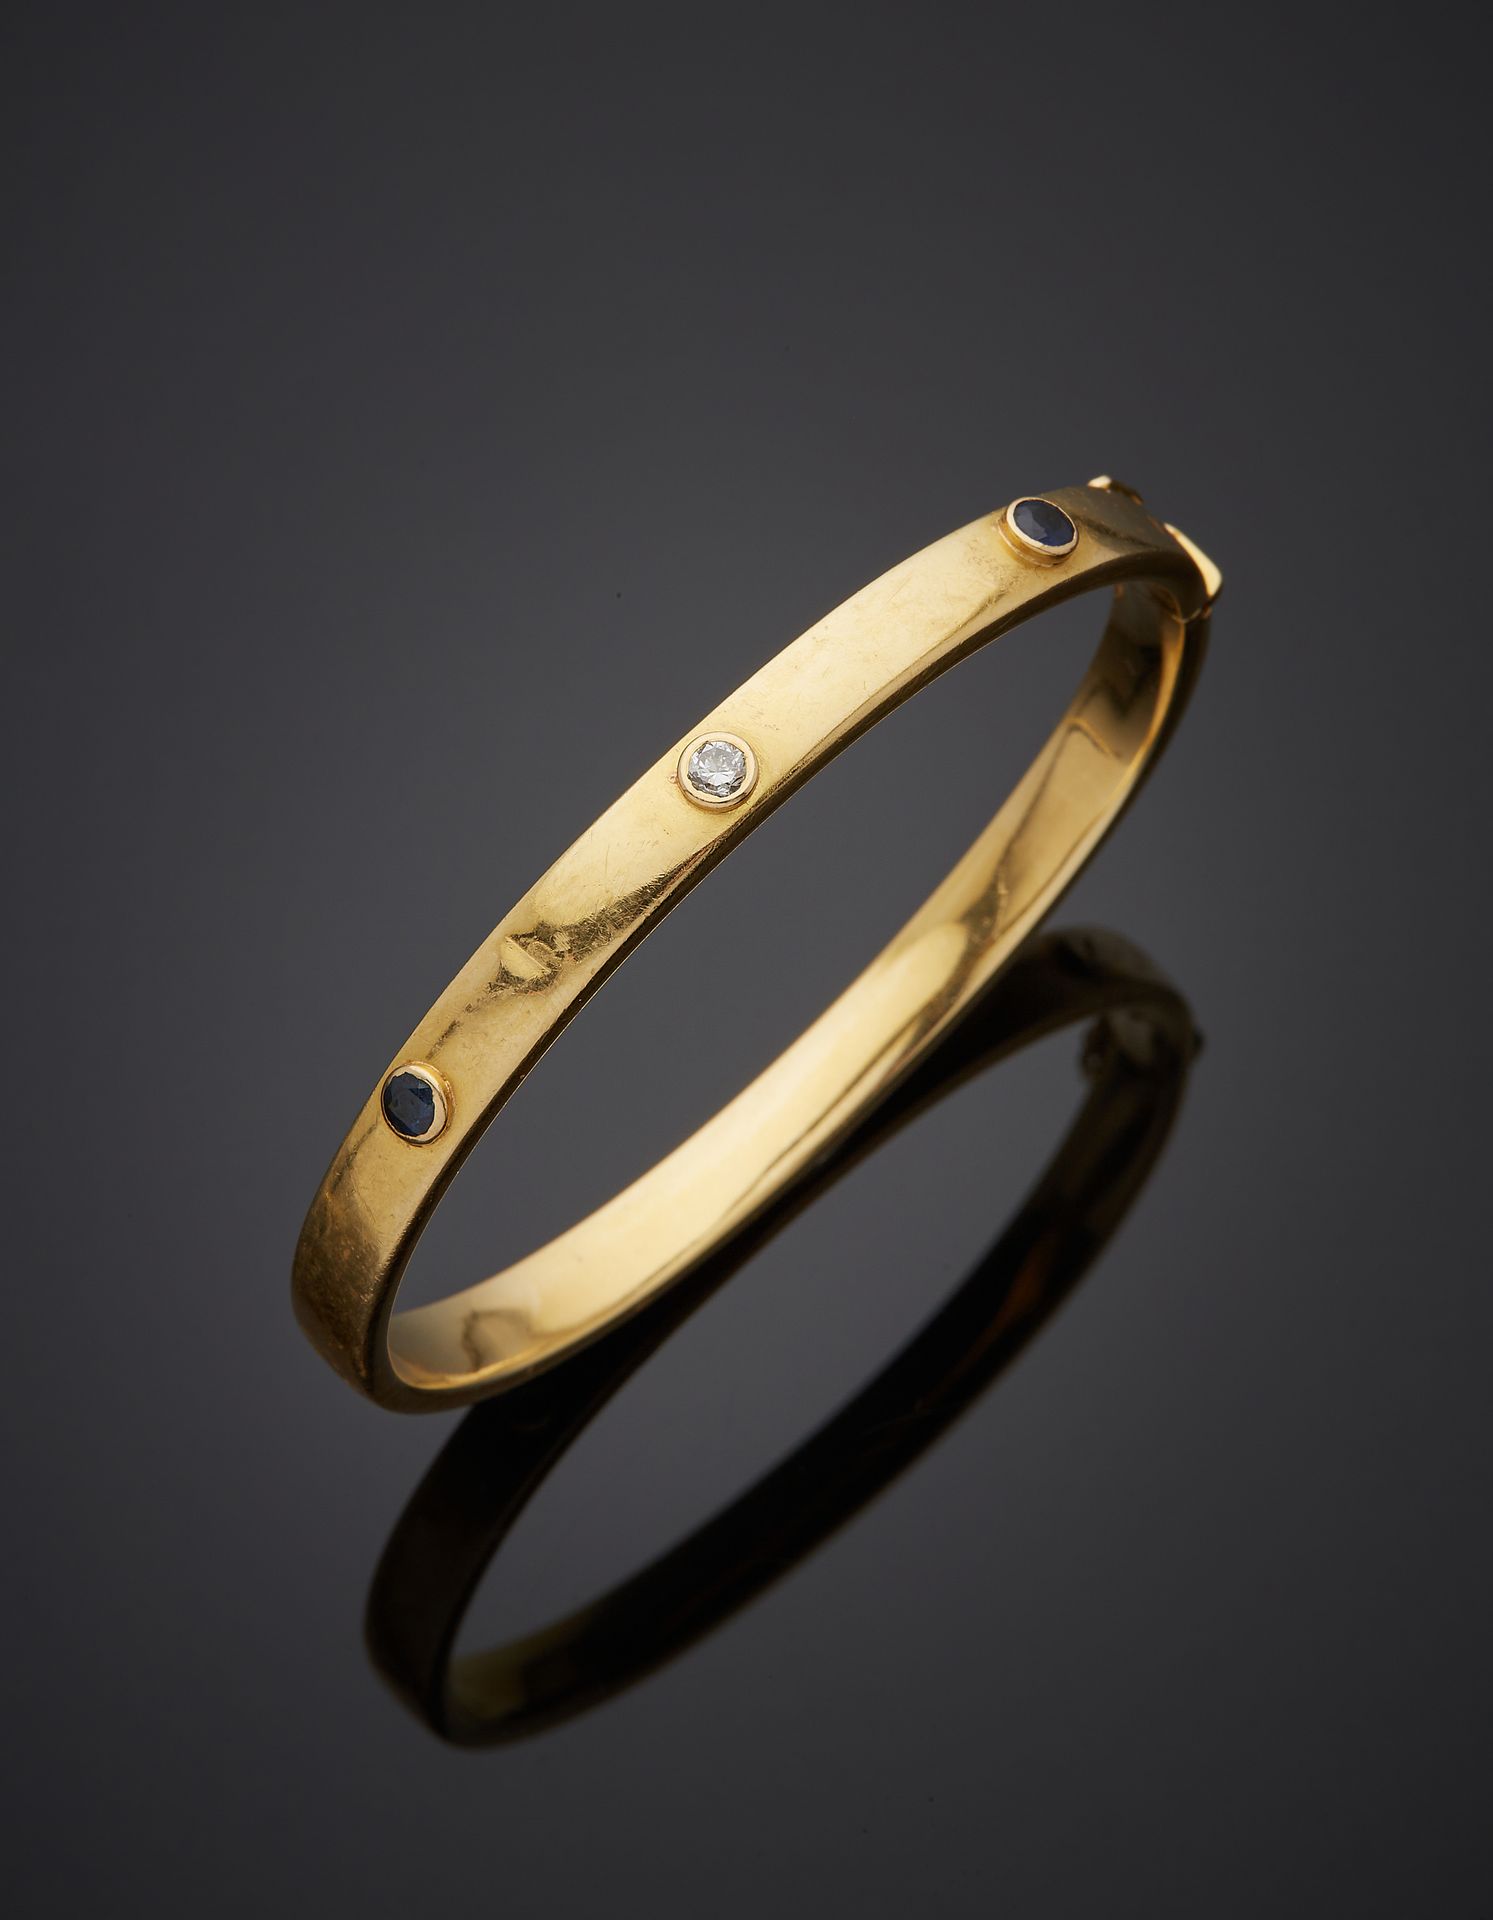 Null 黄金（750‰）开口刚性手镯，有三个螺丝图案，镶嵌两颗蓝宝石和一颗明亮型切割钻石。轻微的震动。
长度：18厘米。毛重：18克。